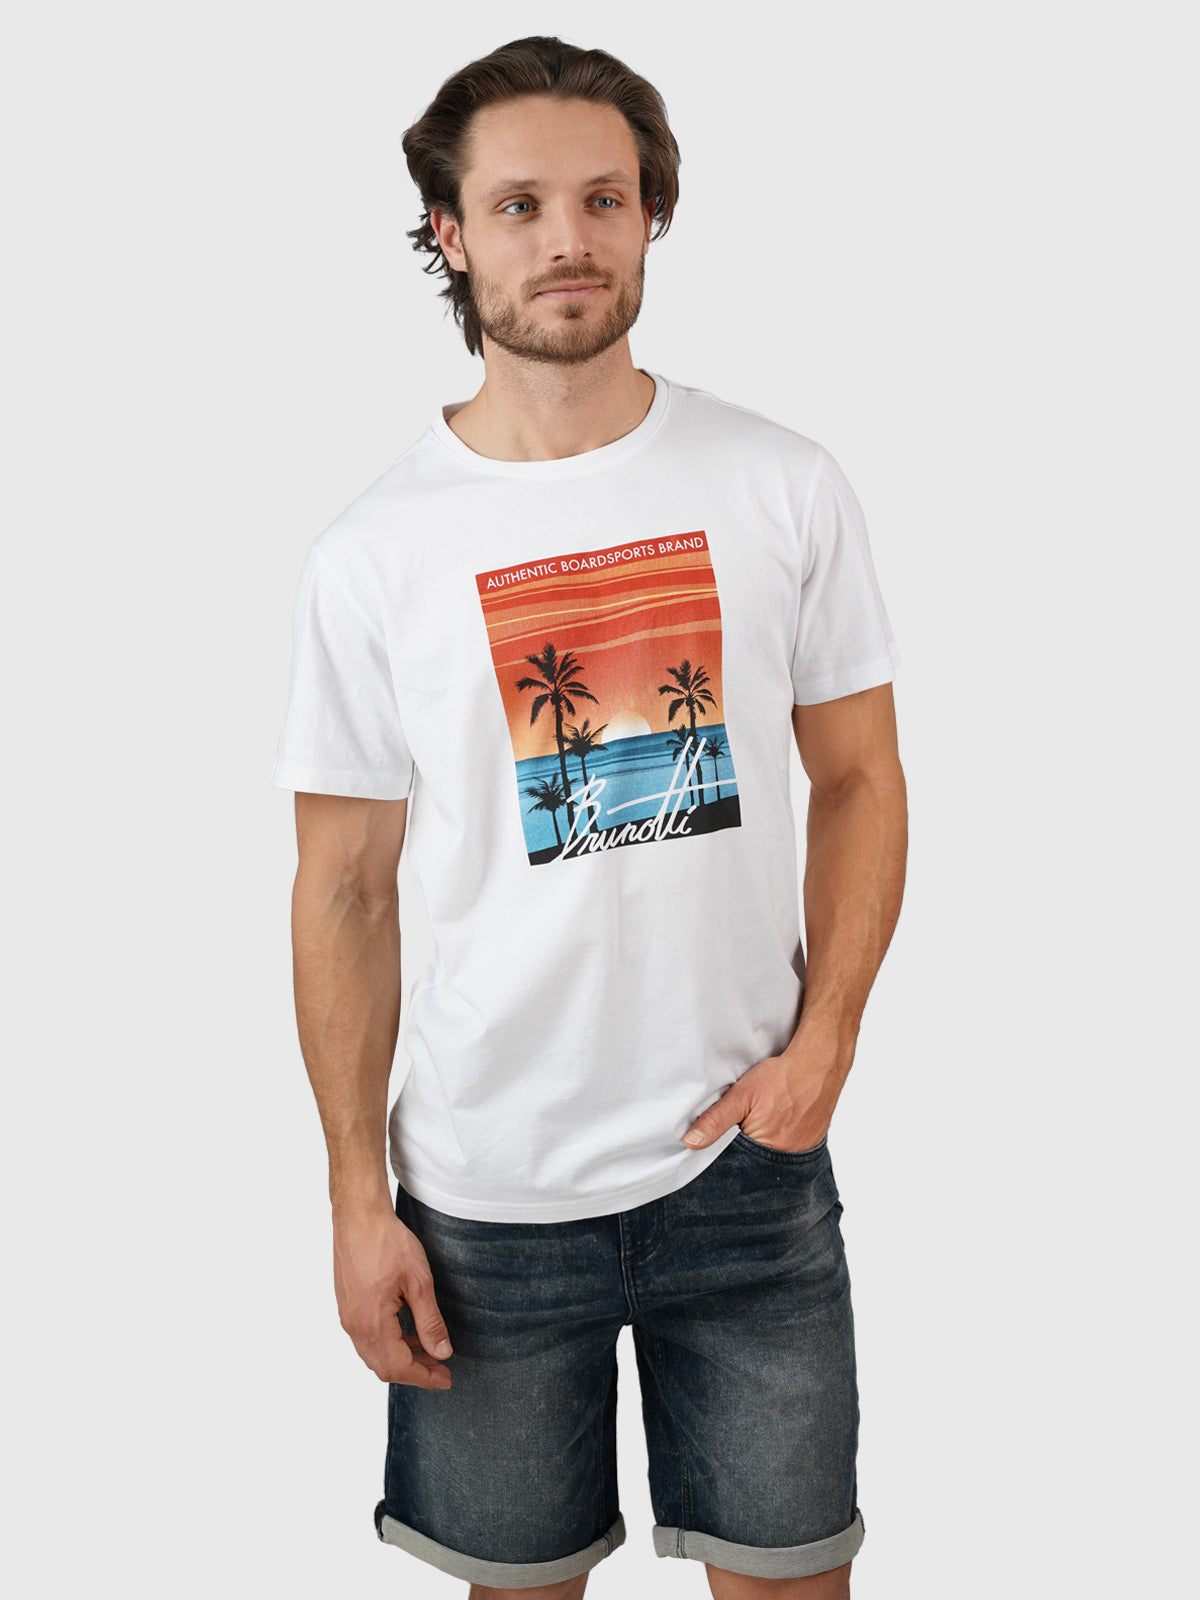 Leeway Herren T-shirt | White